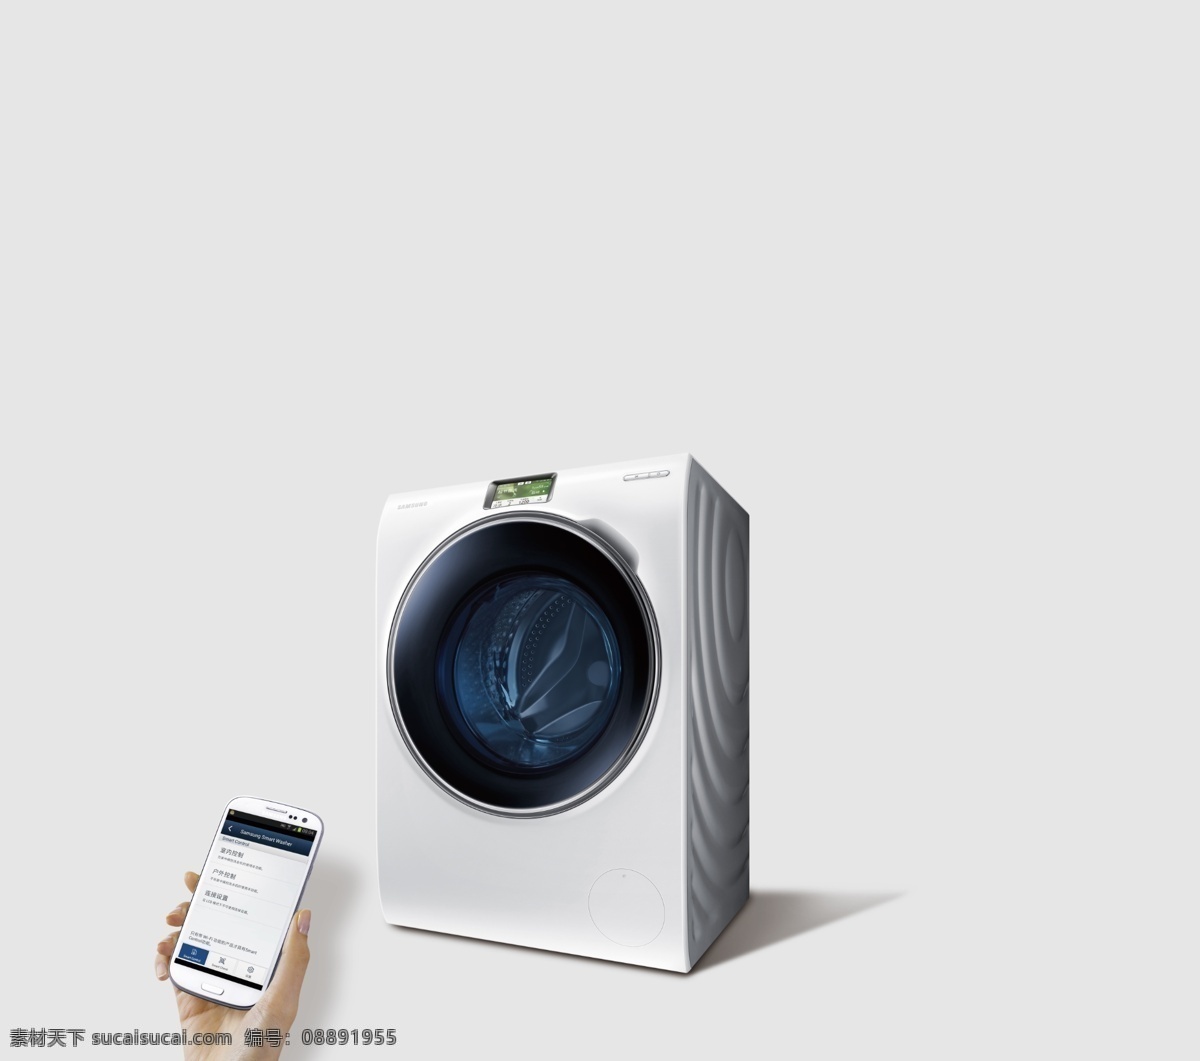 智能 滚筒 洗衣机 智能洗衣机 wifi 控制 app 儿童洗衣机 三星 高端 家庭 空白 模板 高效 清洁 家居 三星洗衣机 空白模板 psd素材 招贴设计